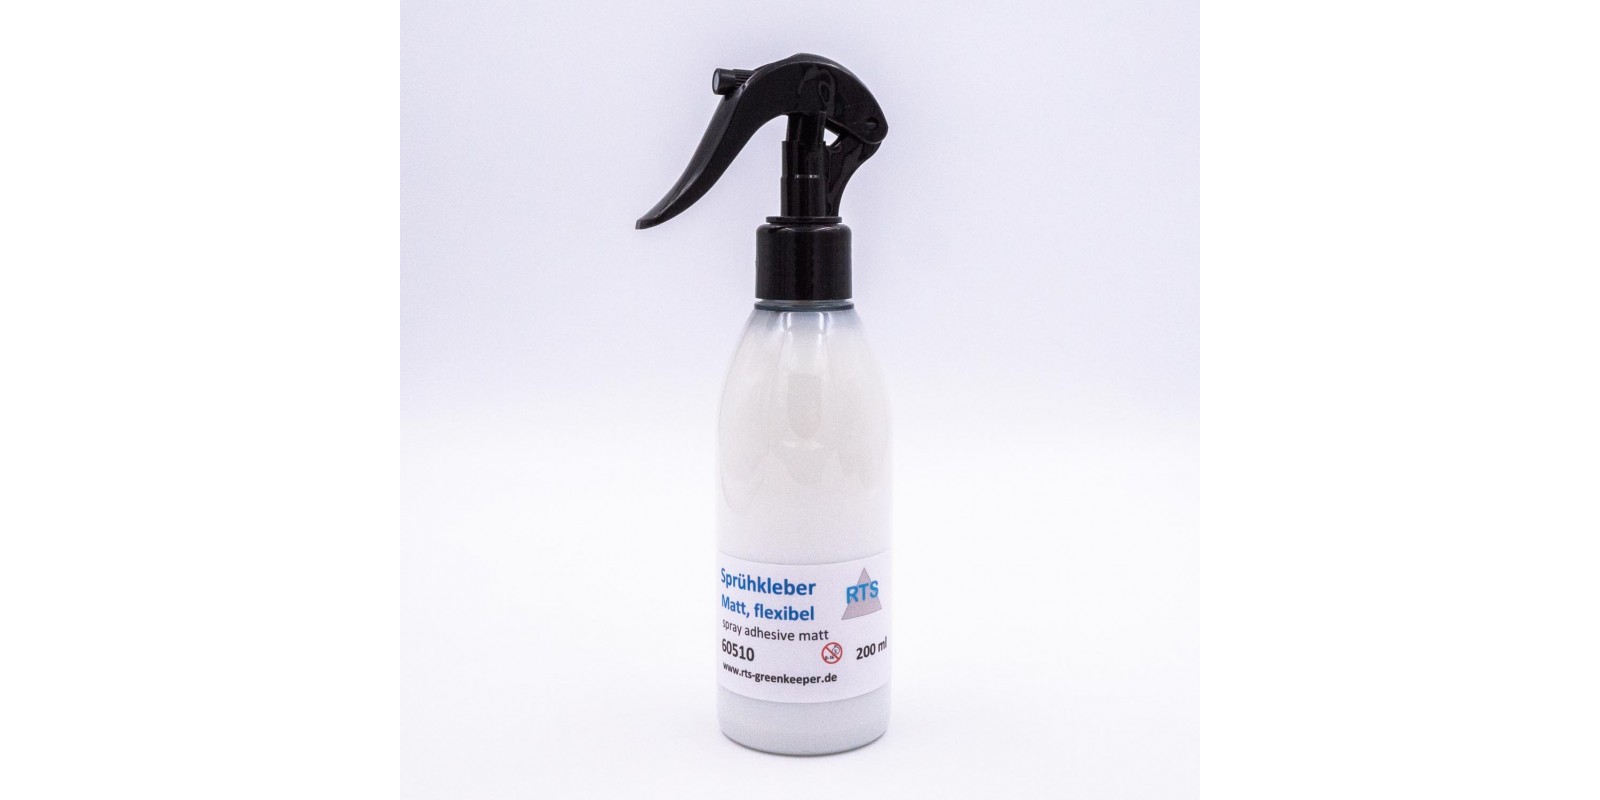 RTS60510 RTS spray adhesive matt 200 ml